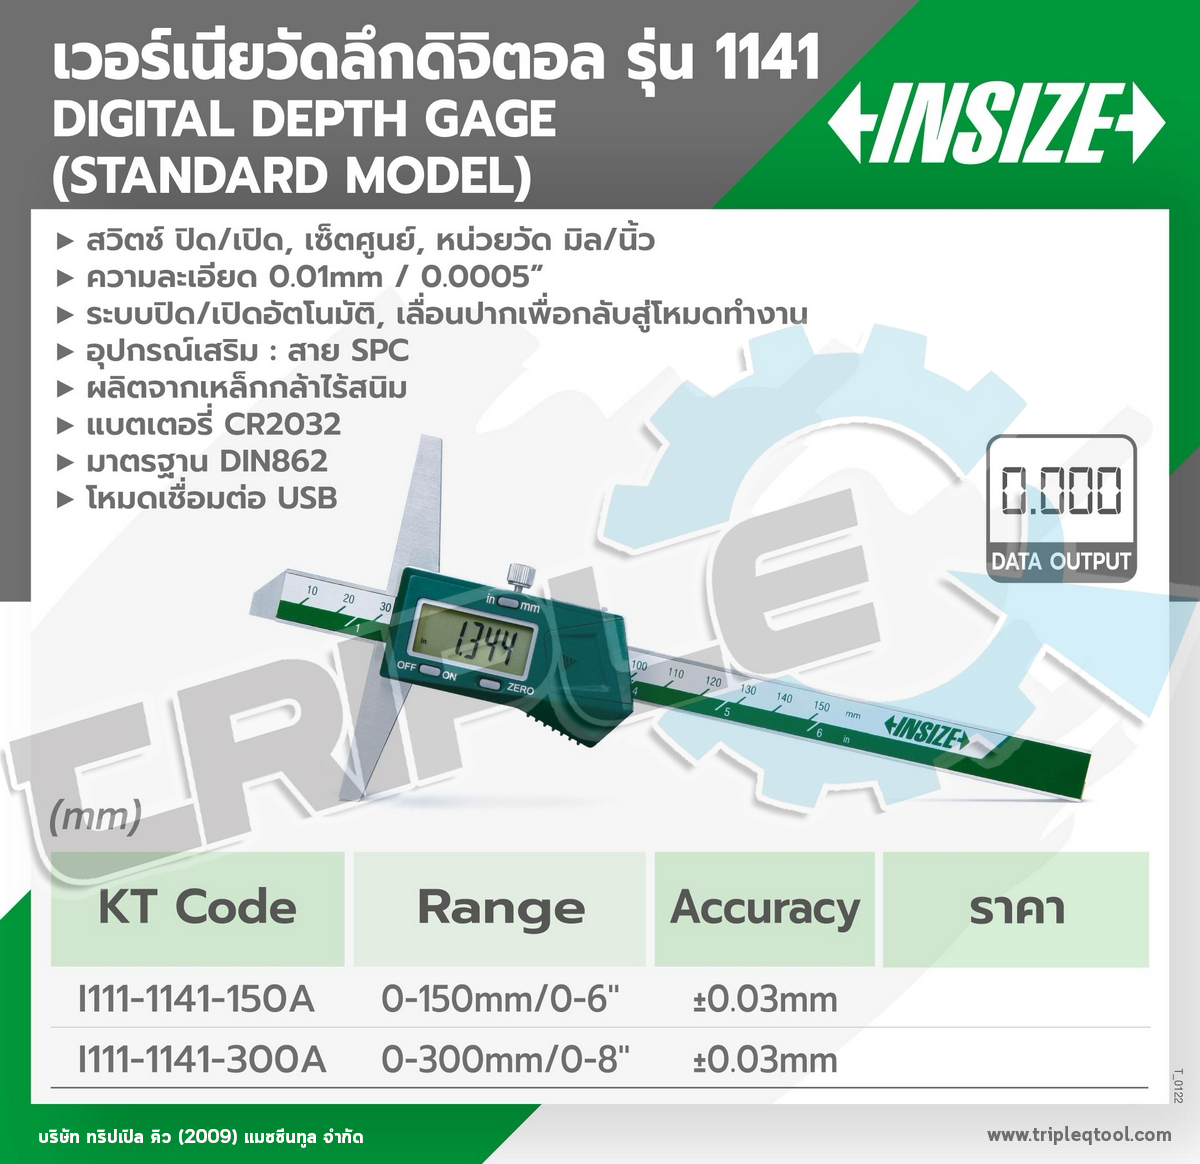 INSIZE - เวอร์เนียร์วัดลึกดิจิตอล (Digital Depth Gages) รุ่น 1141-300A ขนาด 12 นิ้ว